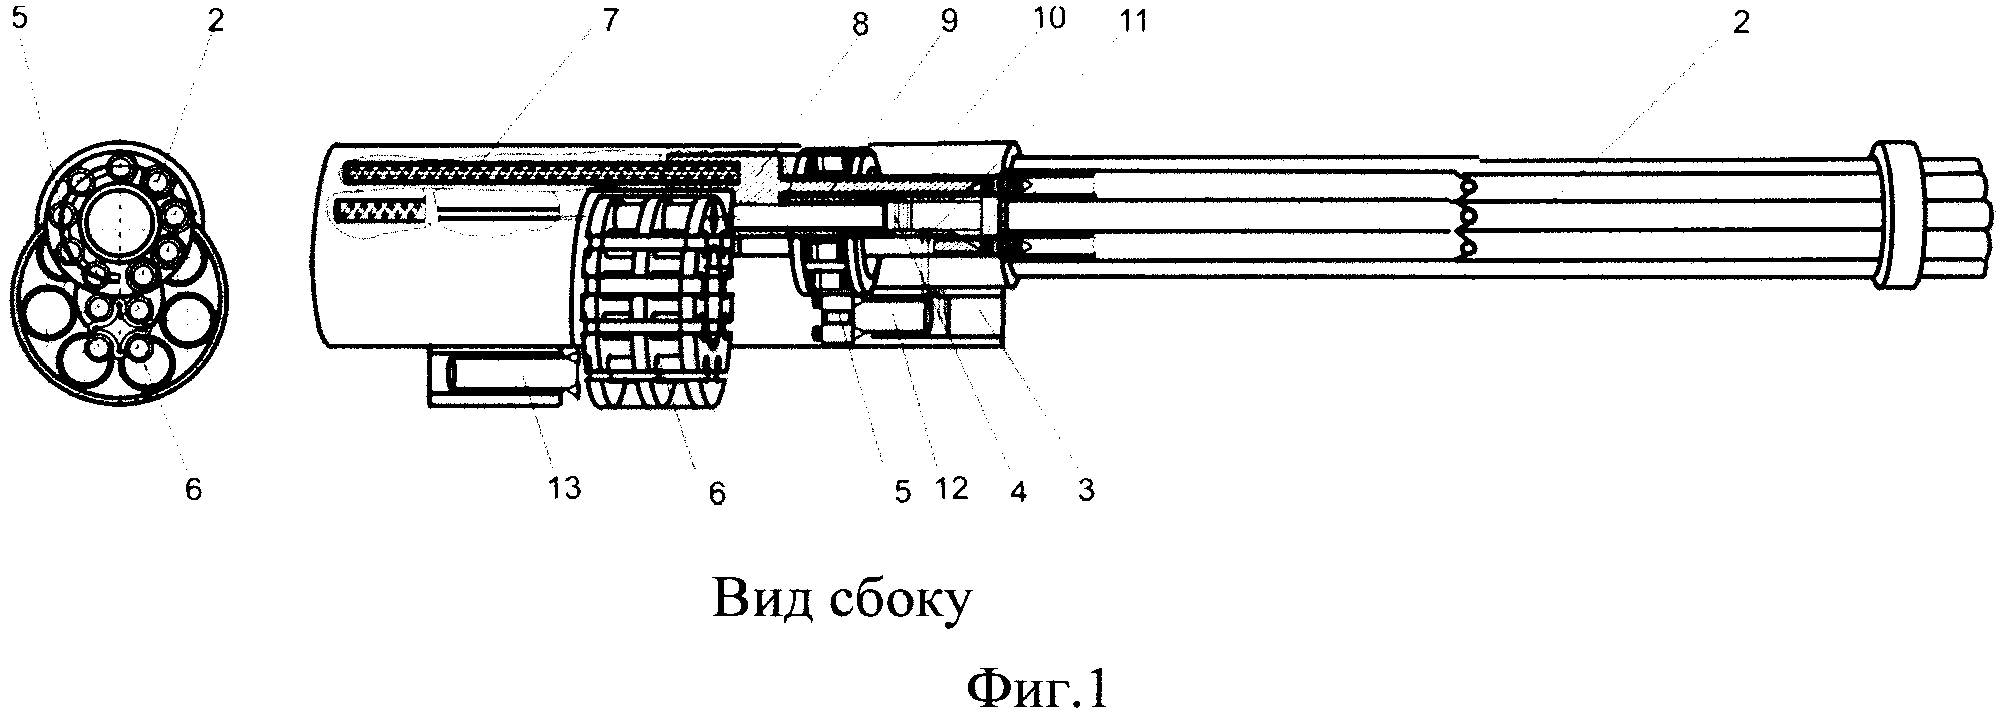 Многоствольная артиллерийская система